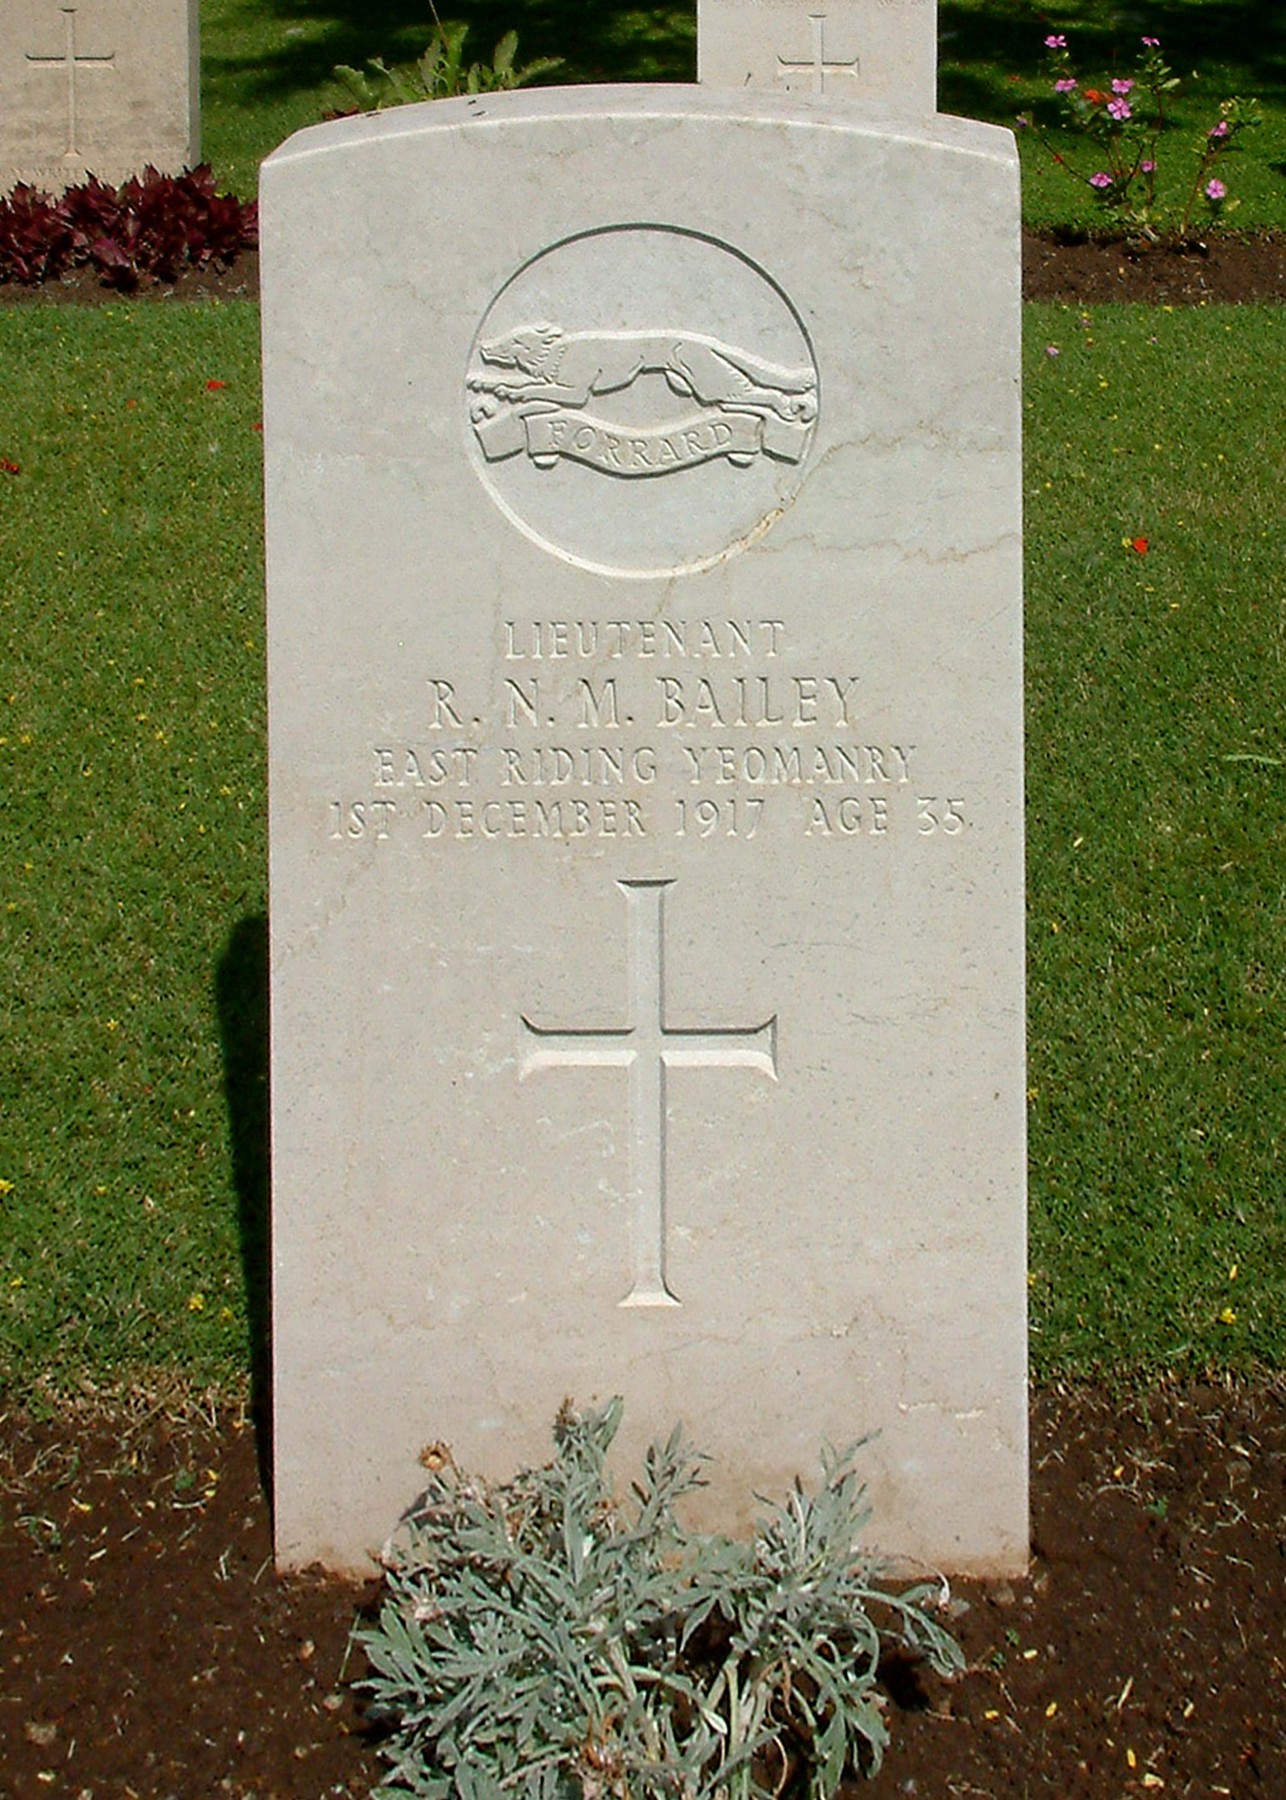 Robert Bailey's grave